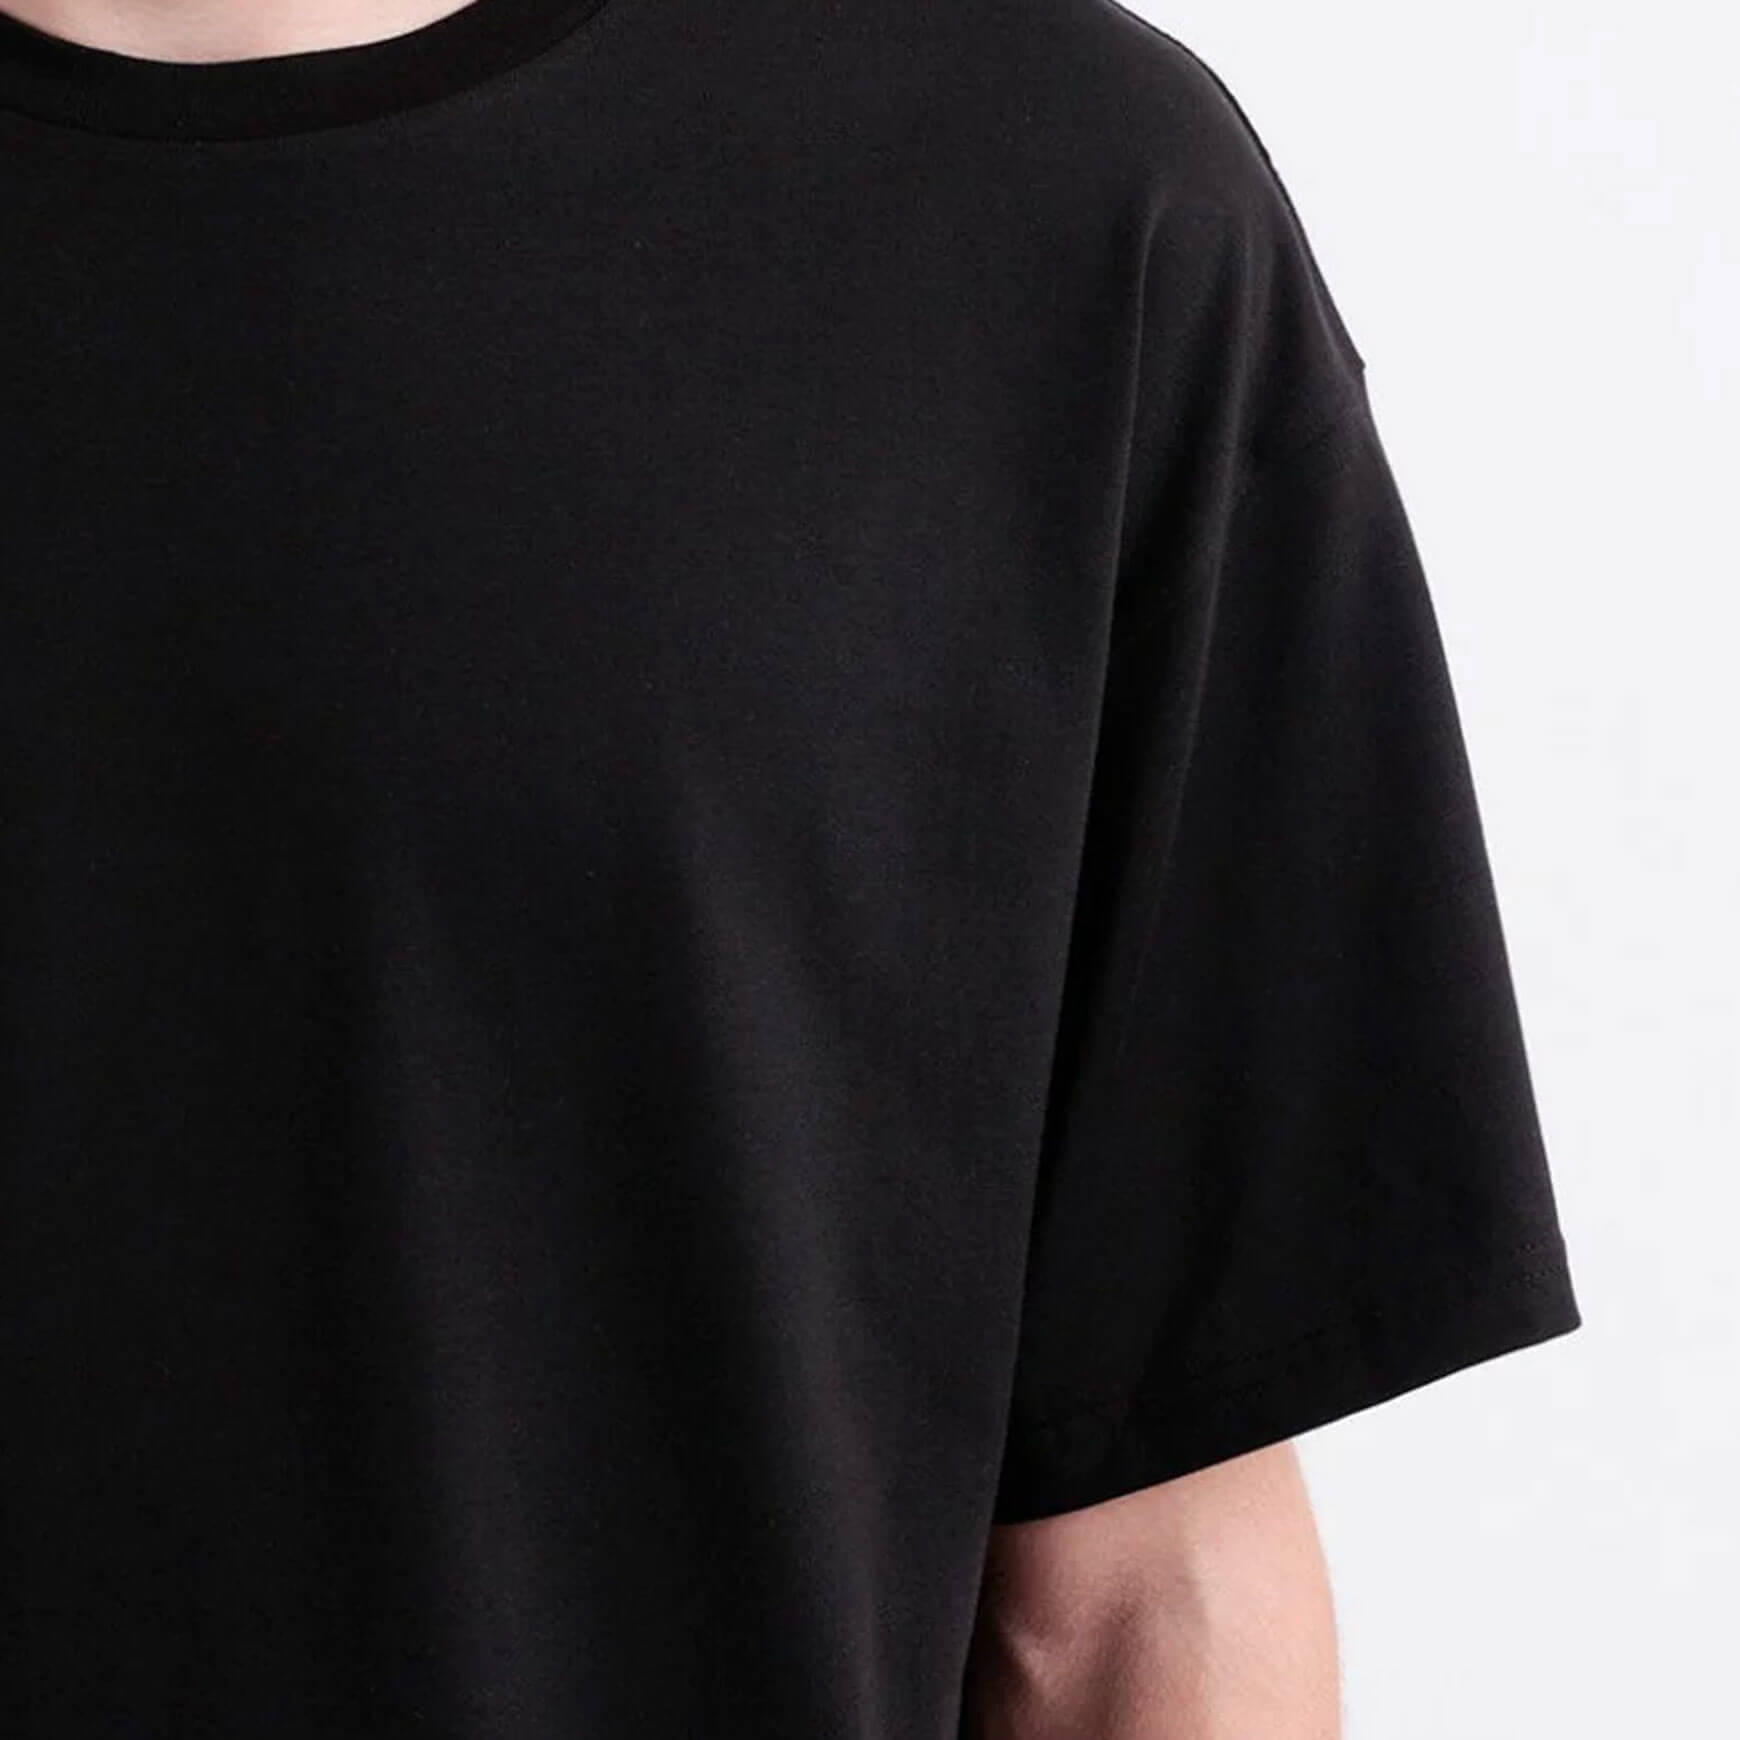 Essential T-Shirt Black